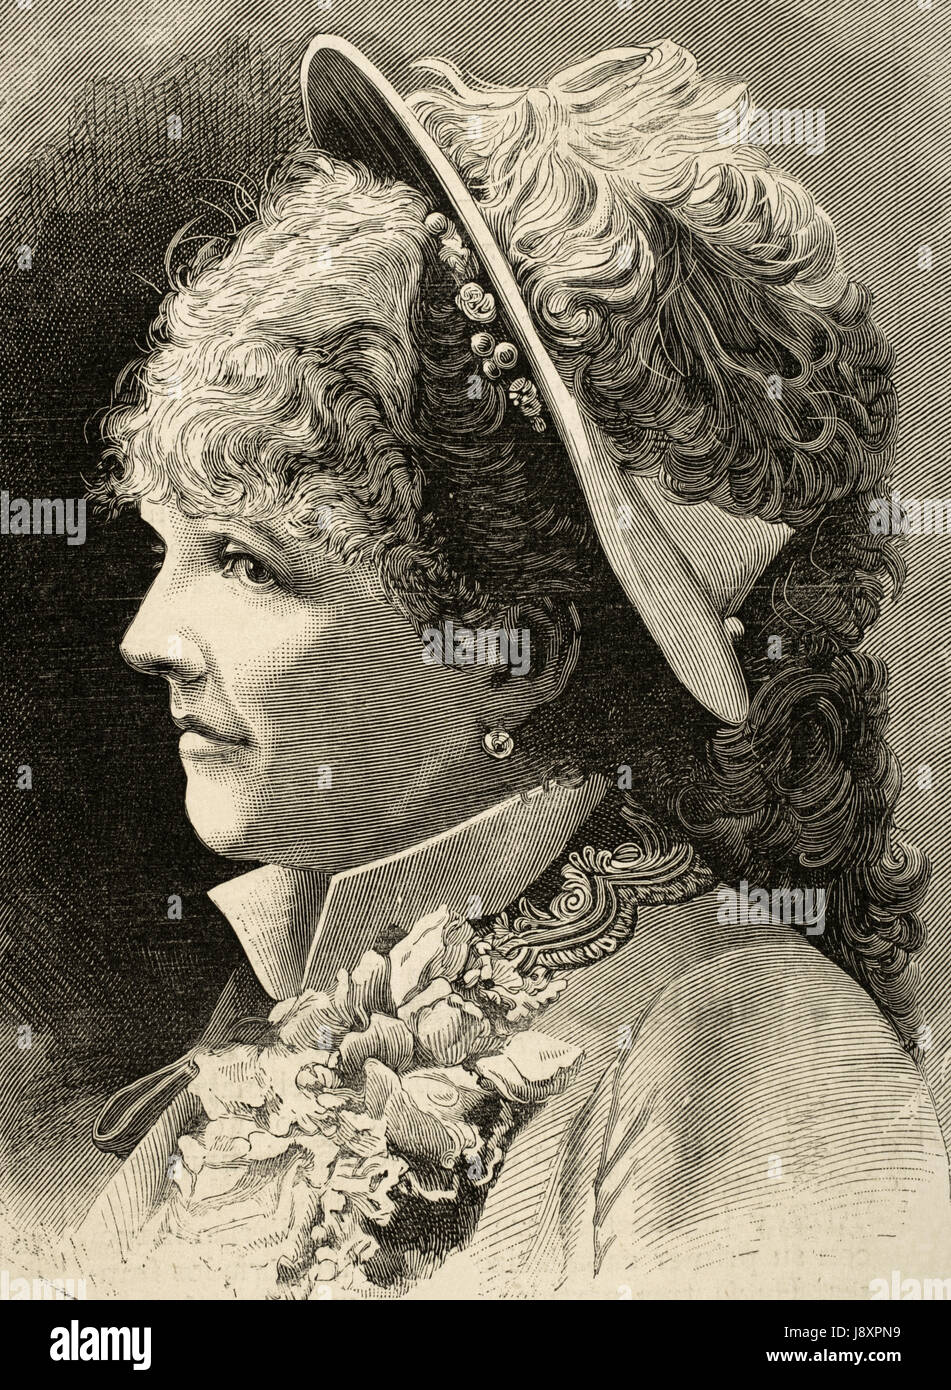 Celine Chaumont (1848-1926). Französische Operette Sänger. Porträt. Kupferstich von Hood. "La Ilustracion Espanola y Americana", 1883. Stockfoto